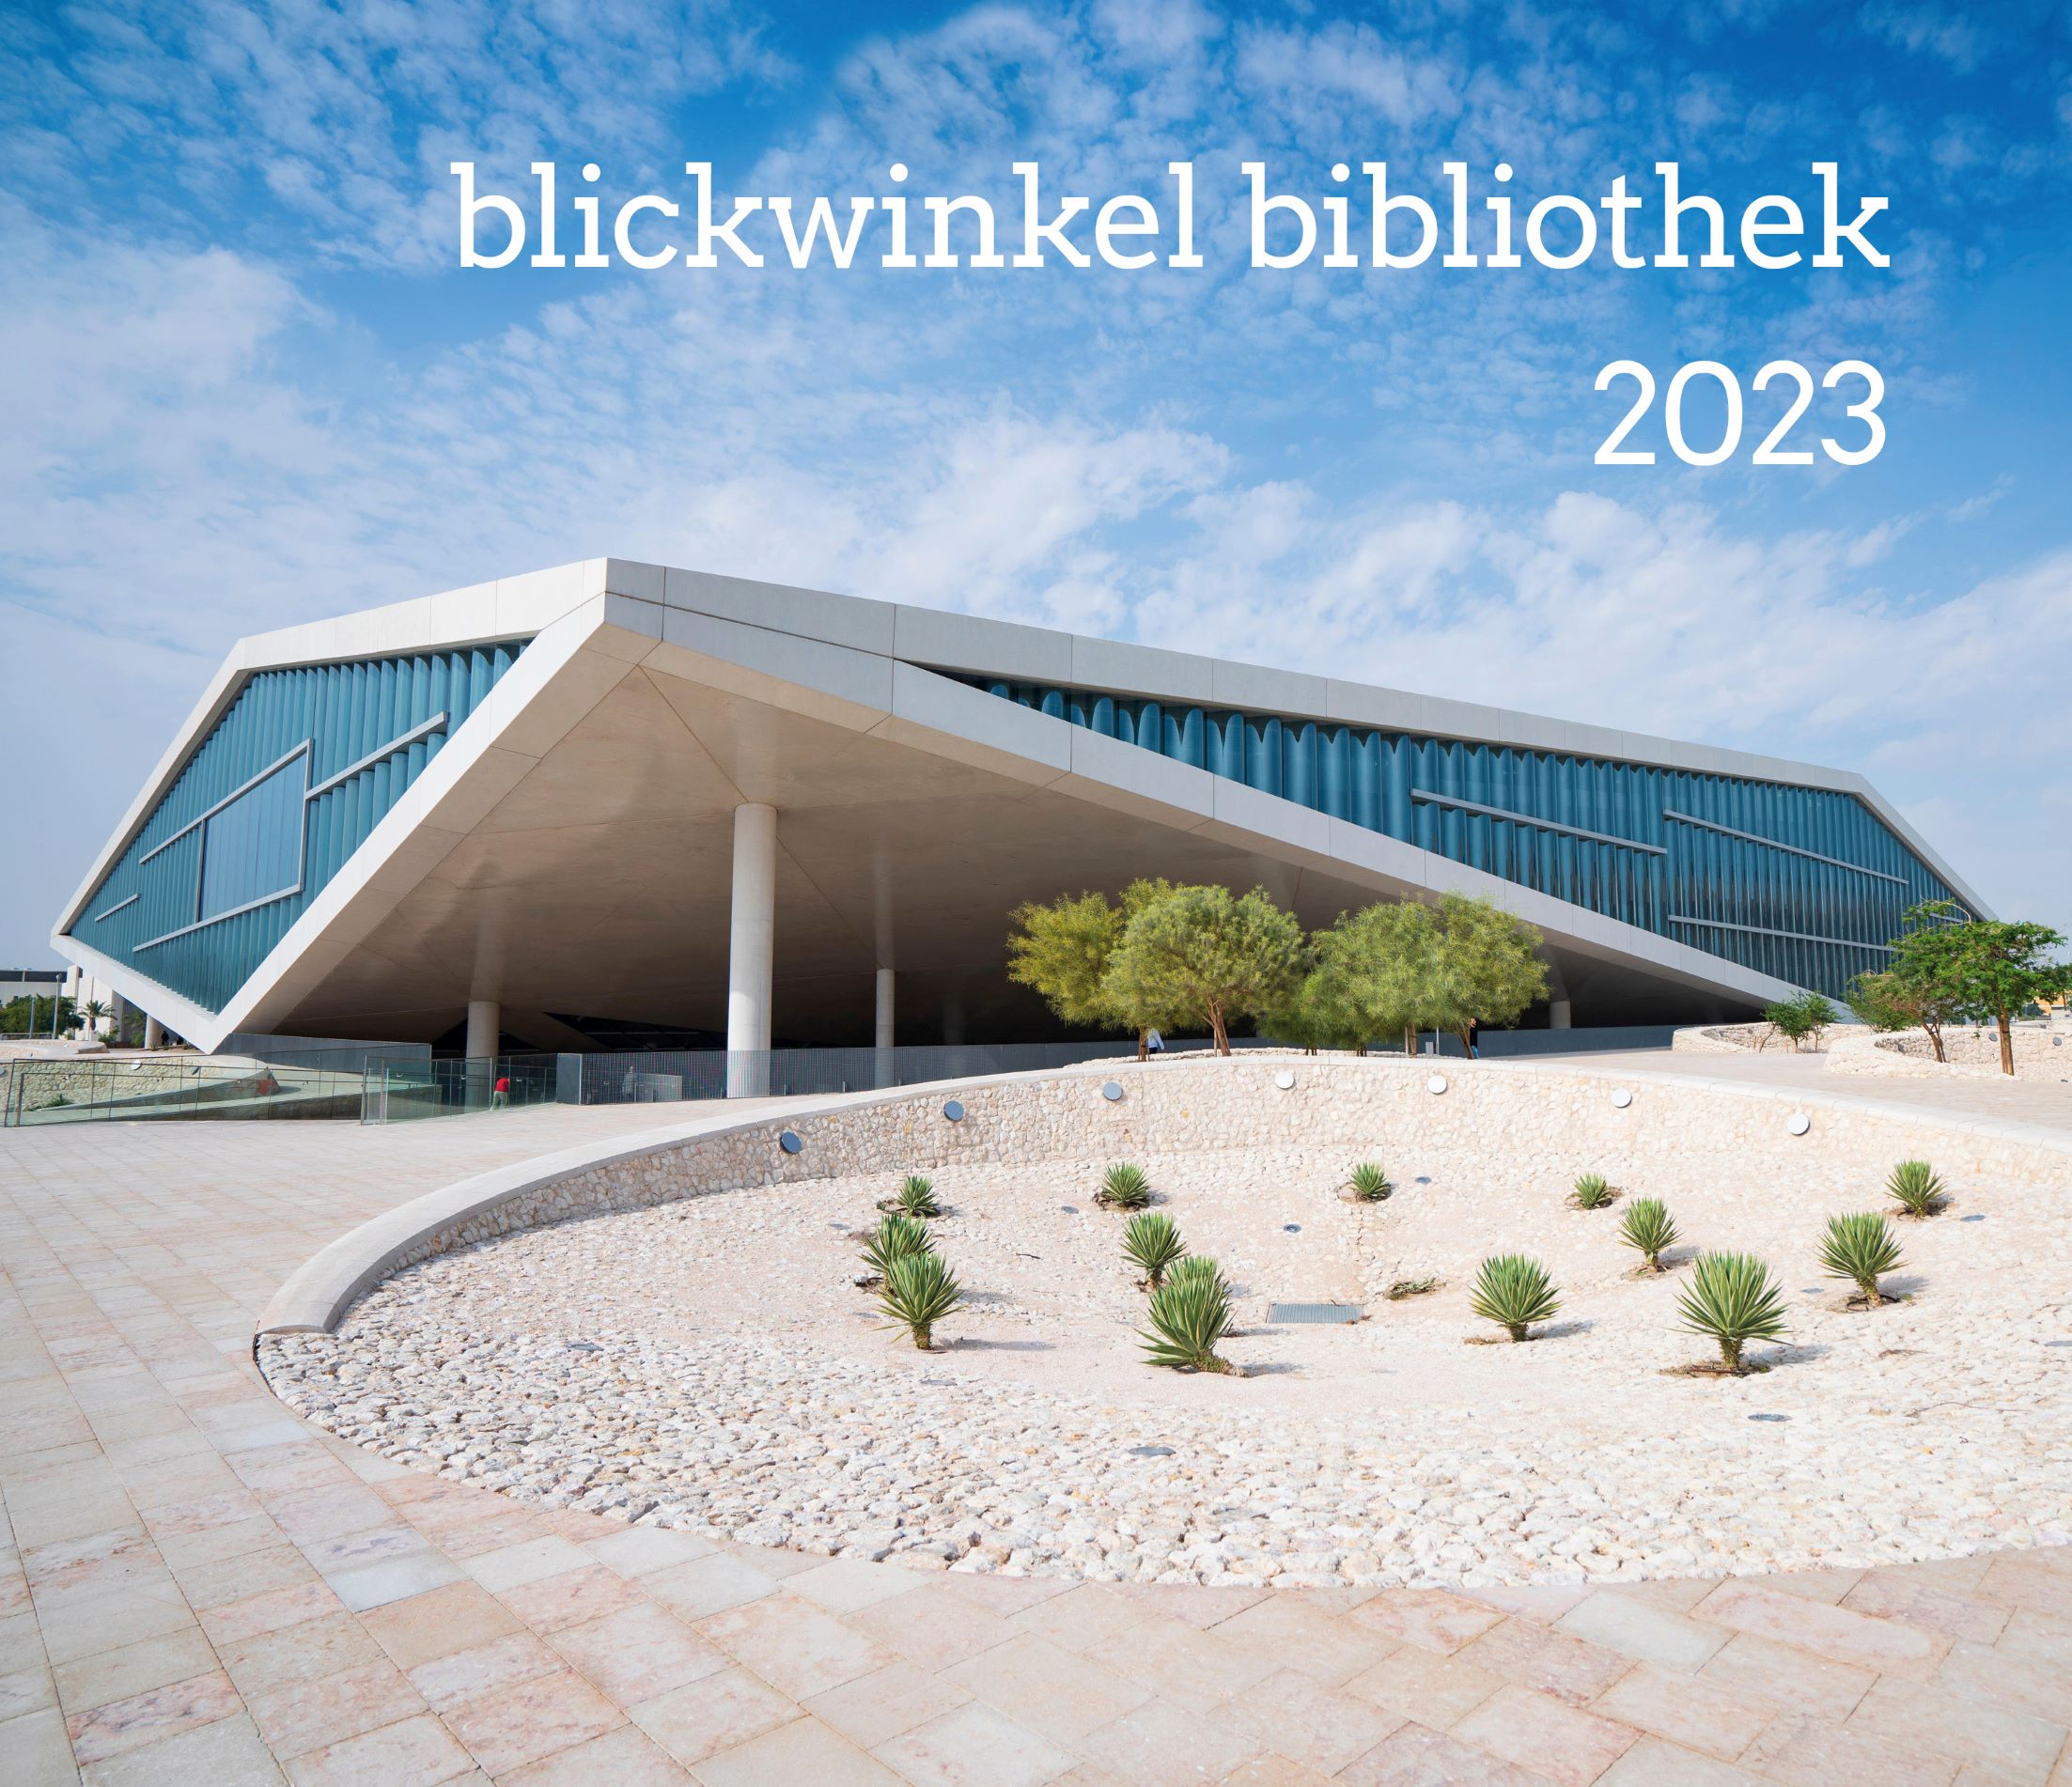 Deckblatt Blickwinkel Bibliothek 2023 vo BibSpider